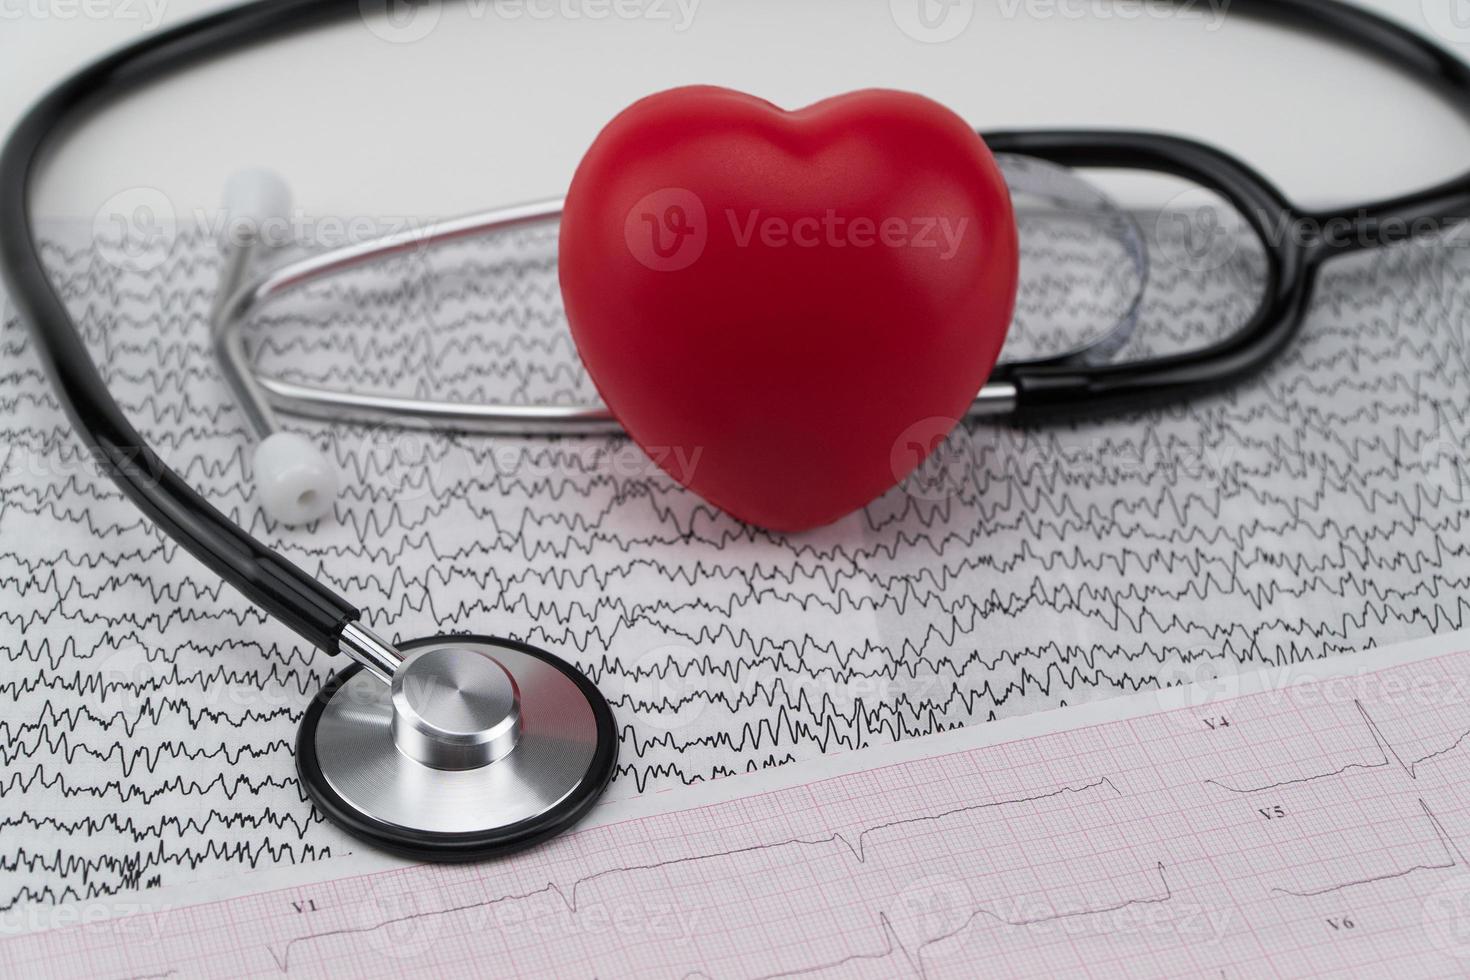 estetoscópio no eletrocardiograma e coração de brinquedo. conceito de saúde. cardiologia - cuidados com o coração foto